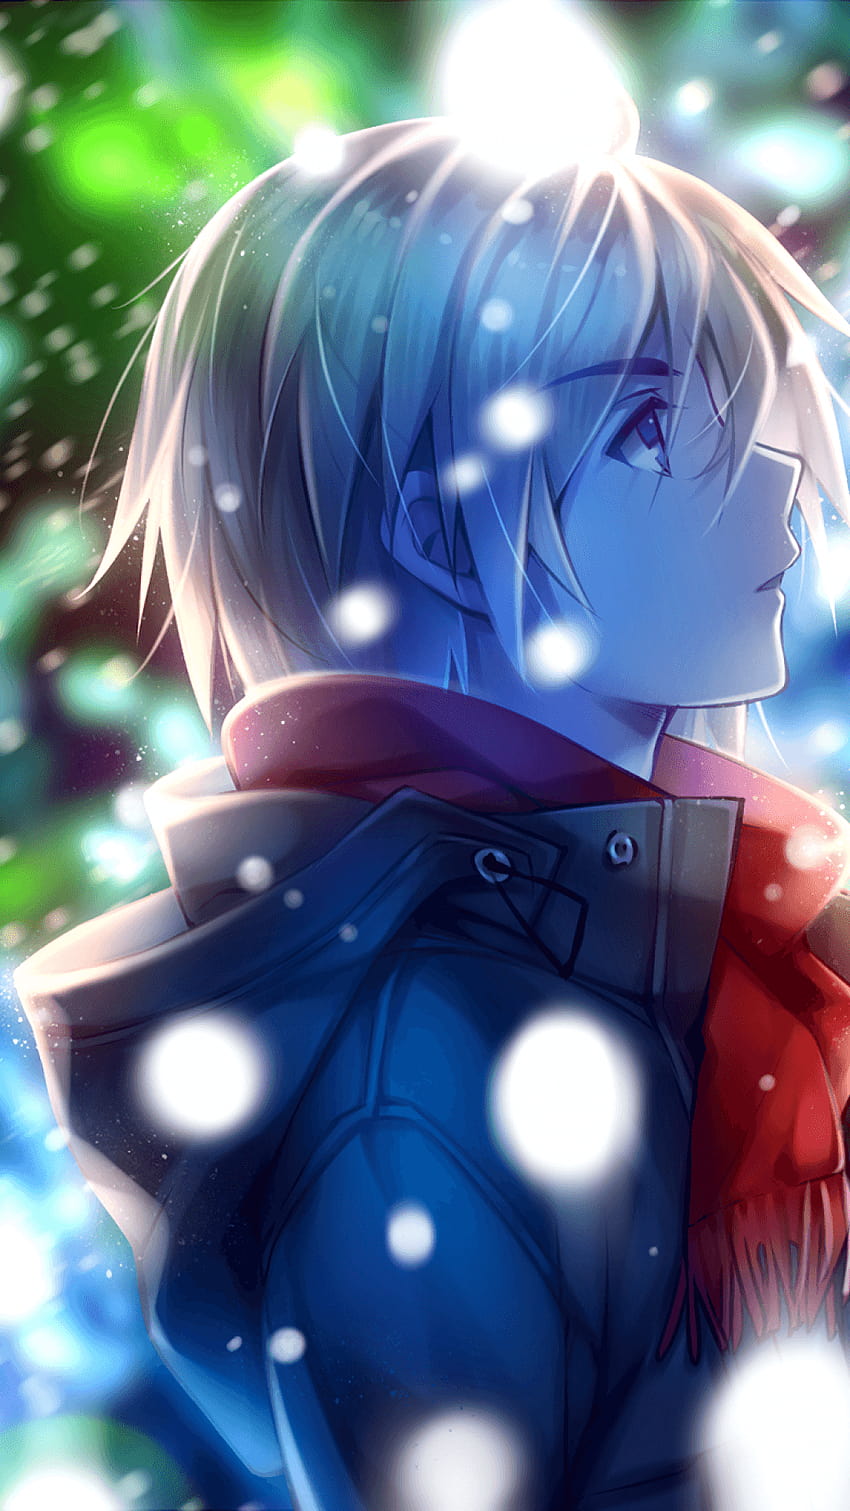 1080x1920 Anime Boy, Vista profilo, Sciarpa rossa, Inverno, Neve, simpatici ragazzi anime Sfondo del telefono HD